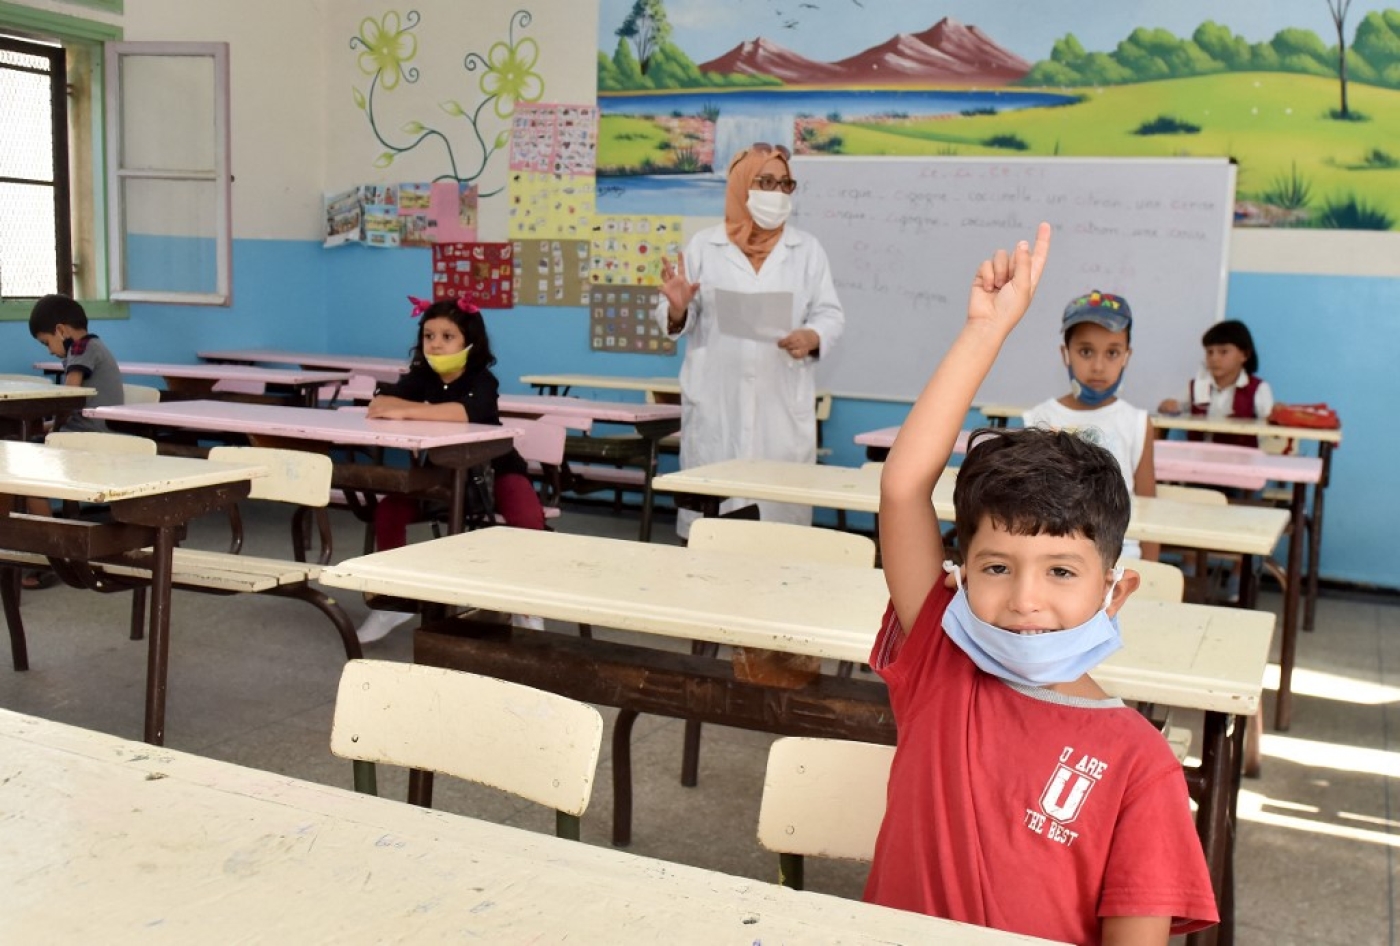 Les projets de réforme n’ont pas réussi à pallier les dysfonctionnements structurels qui plombent l’école marocaine (AFP)